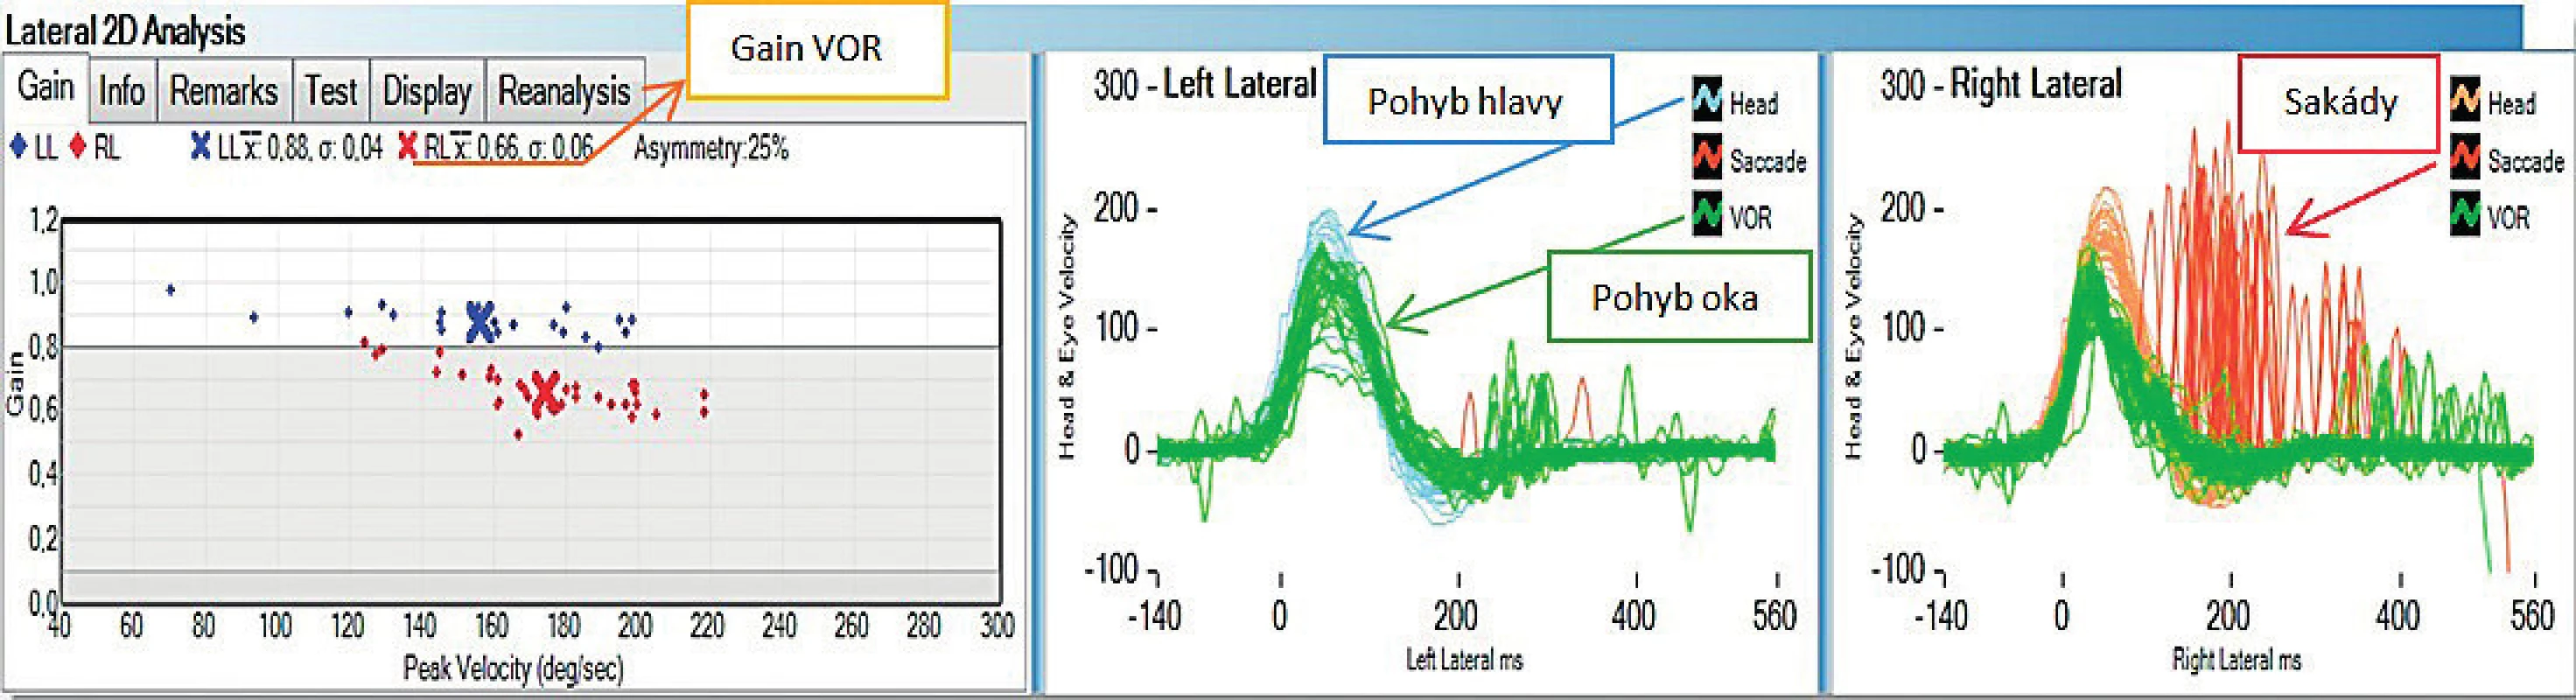 Grafické znázornění výsledků testu u zdravého jedince. Rychlost pohybu oka (zelená barva) koreluje s rychlostí pohybu hlavy
(modrá a oranžová barva). Diagram zobrazuje průměrnou hodnotu gainu VOR při testování jednotlivých polokruhovitých kanálků.
Popis polokruhovitých kanálků vnitřního ucha: RL (pravý laterální), LL (levý laterální), RA (pravý přední), LA (levý přední), RP (pravý zadní),
LP (levý zadní).